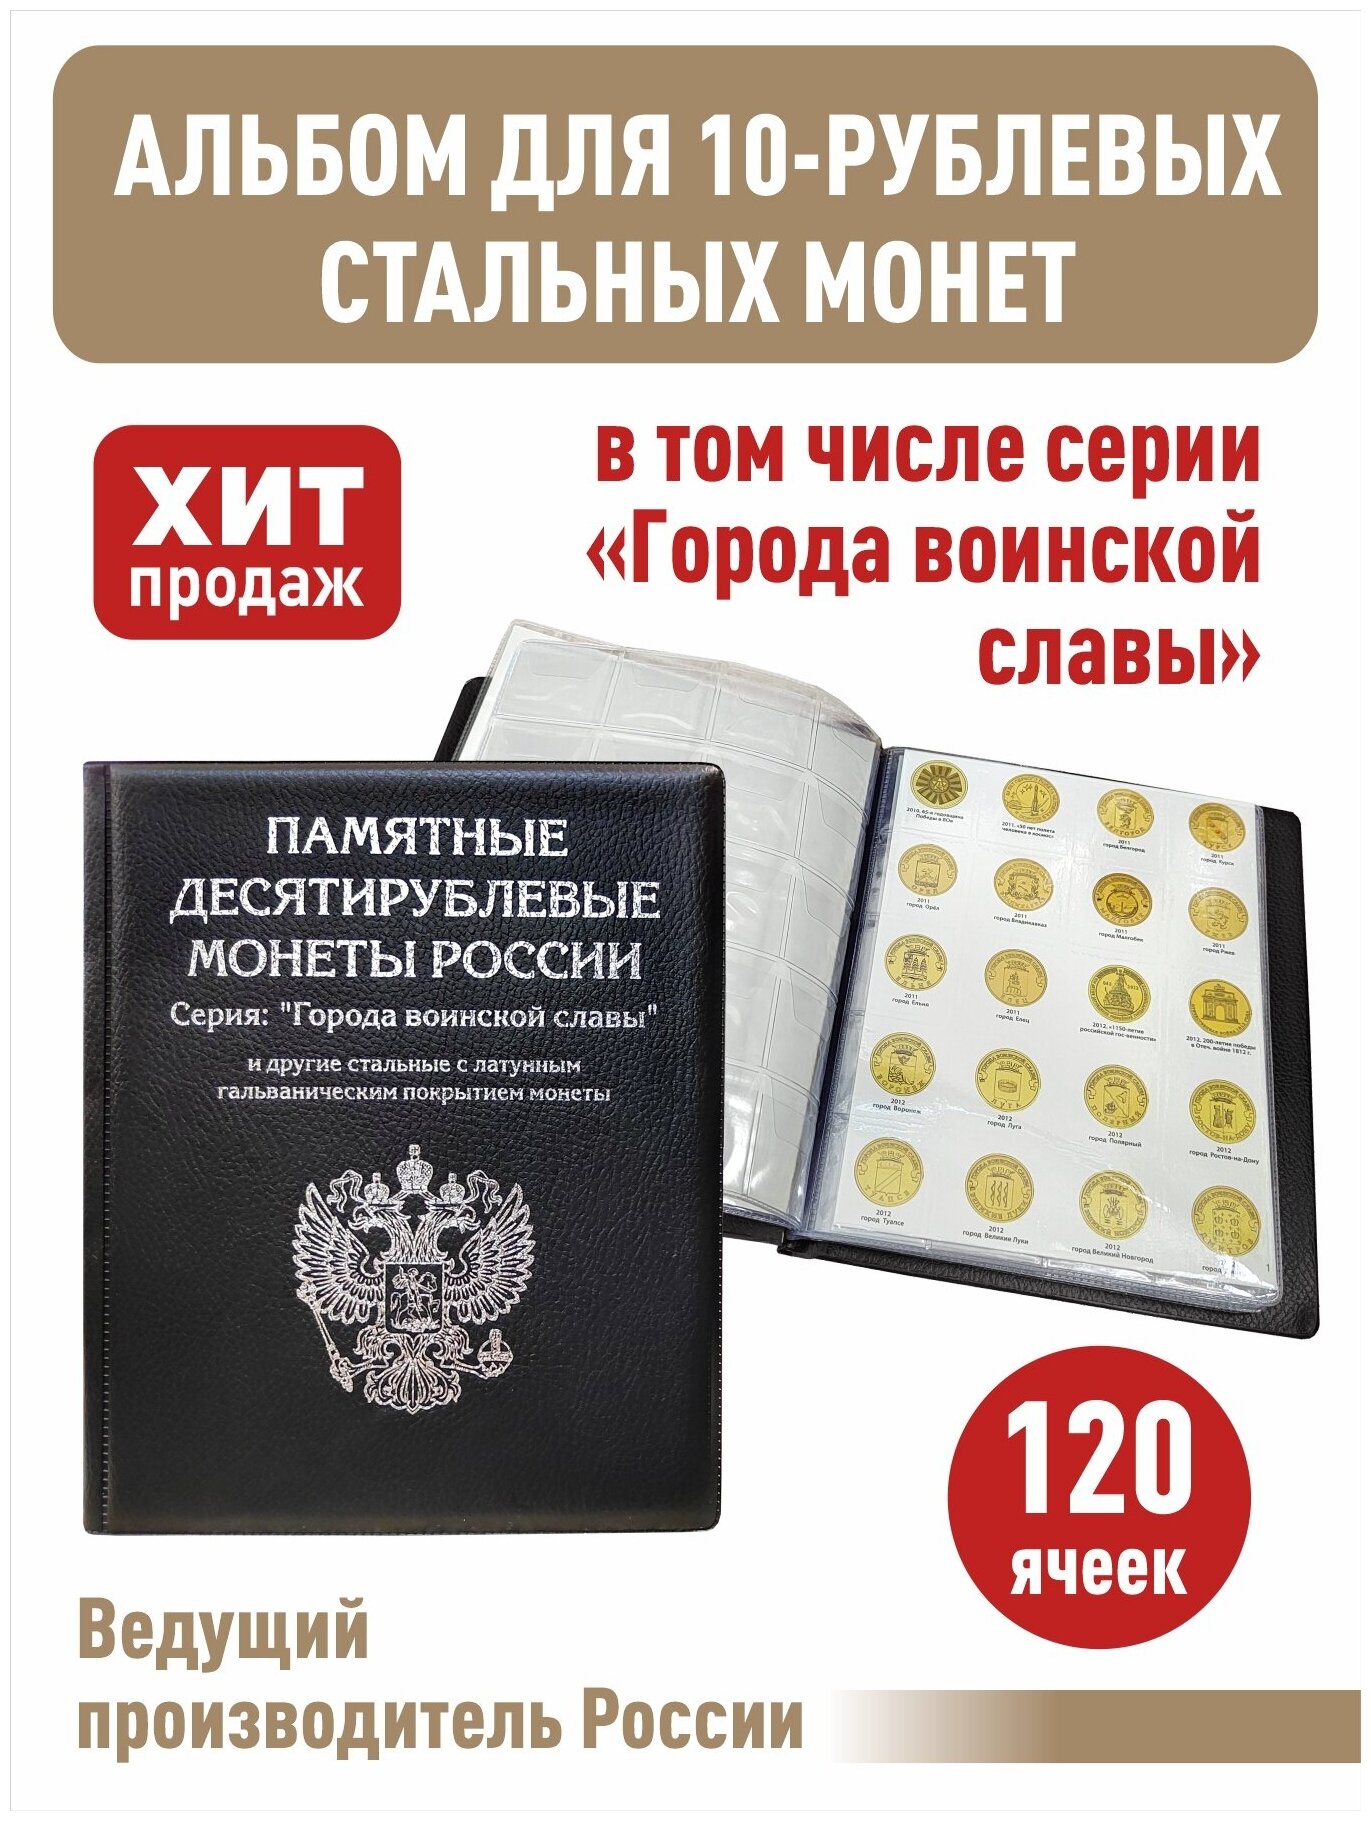 Альбом малый для 10-рублевых монет серии "Города воинской славы" и других монет с промежуточными листами с изображениями монет. Цвет черный.